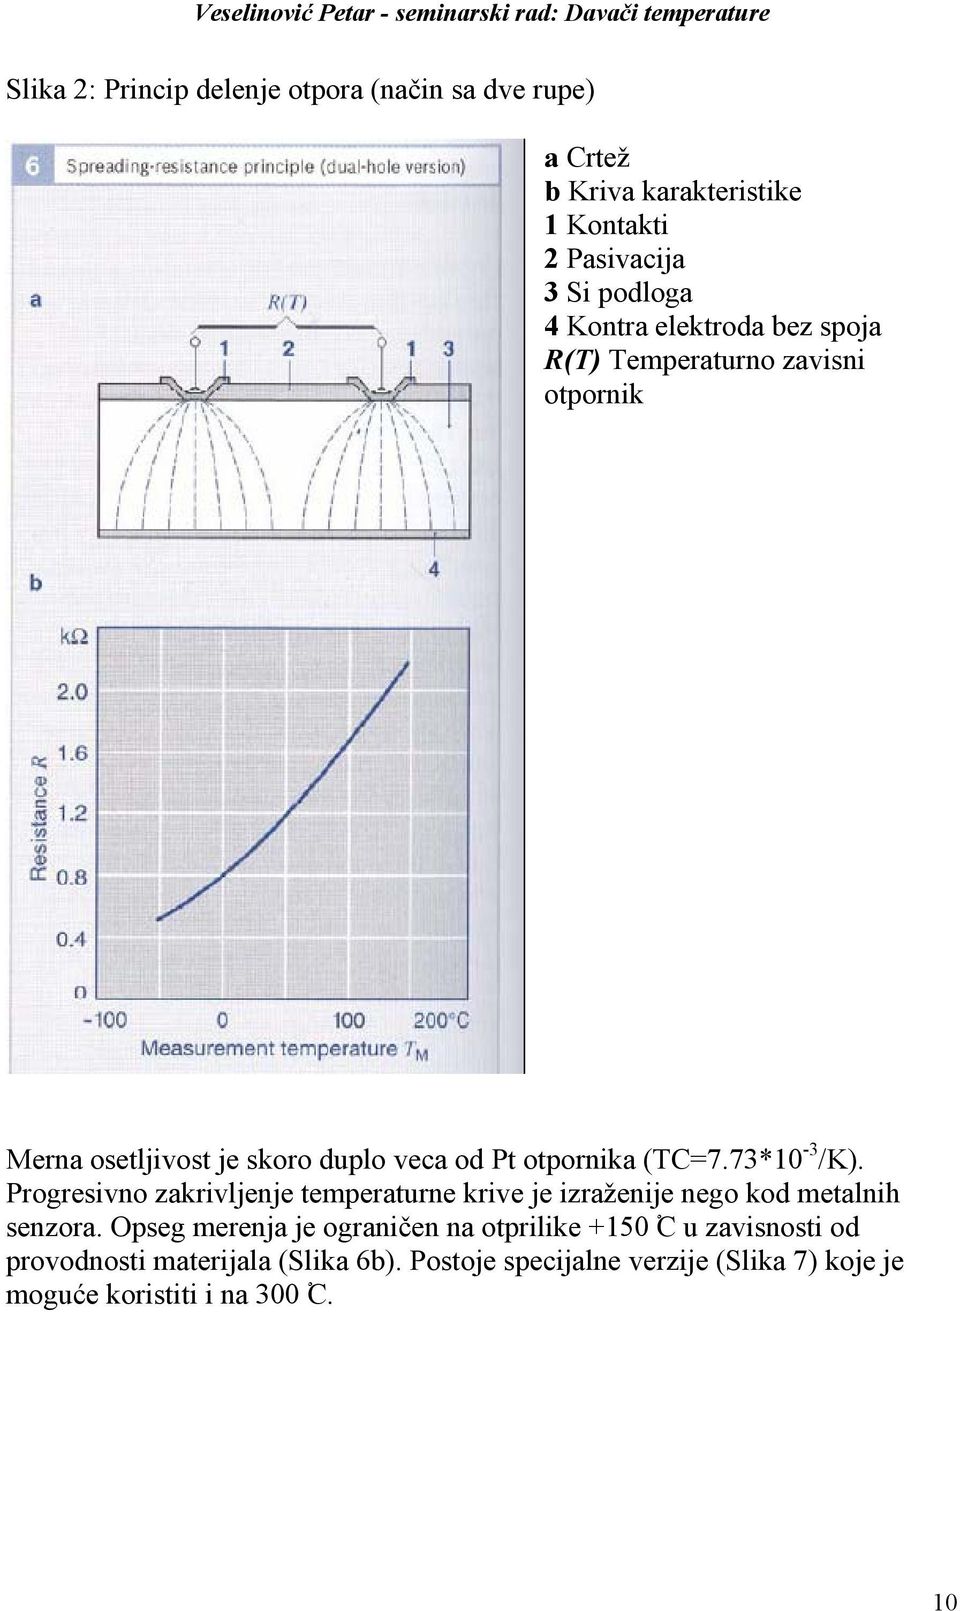 Progresivno zakrivljenje temperaturne krive je izraženije nego kod metalnih senzora.